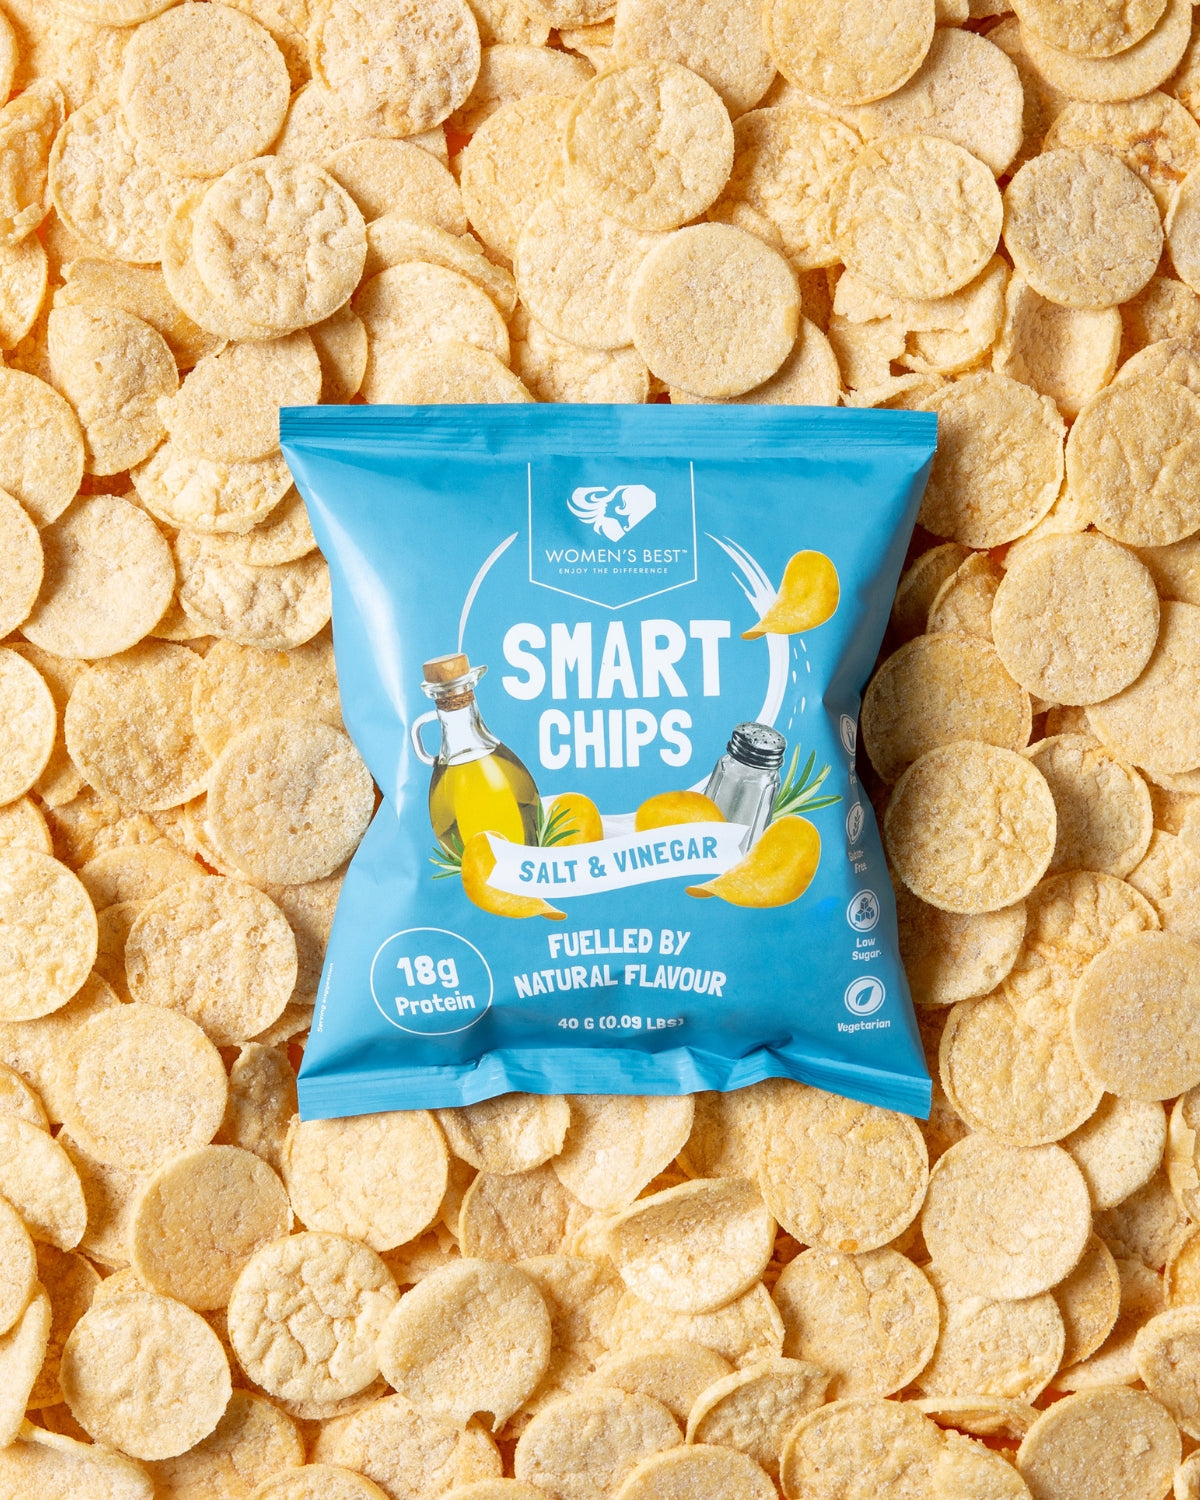 Smart Chips 40g, Salt & Vinegar, Women's Best